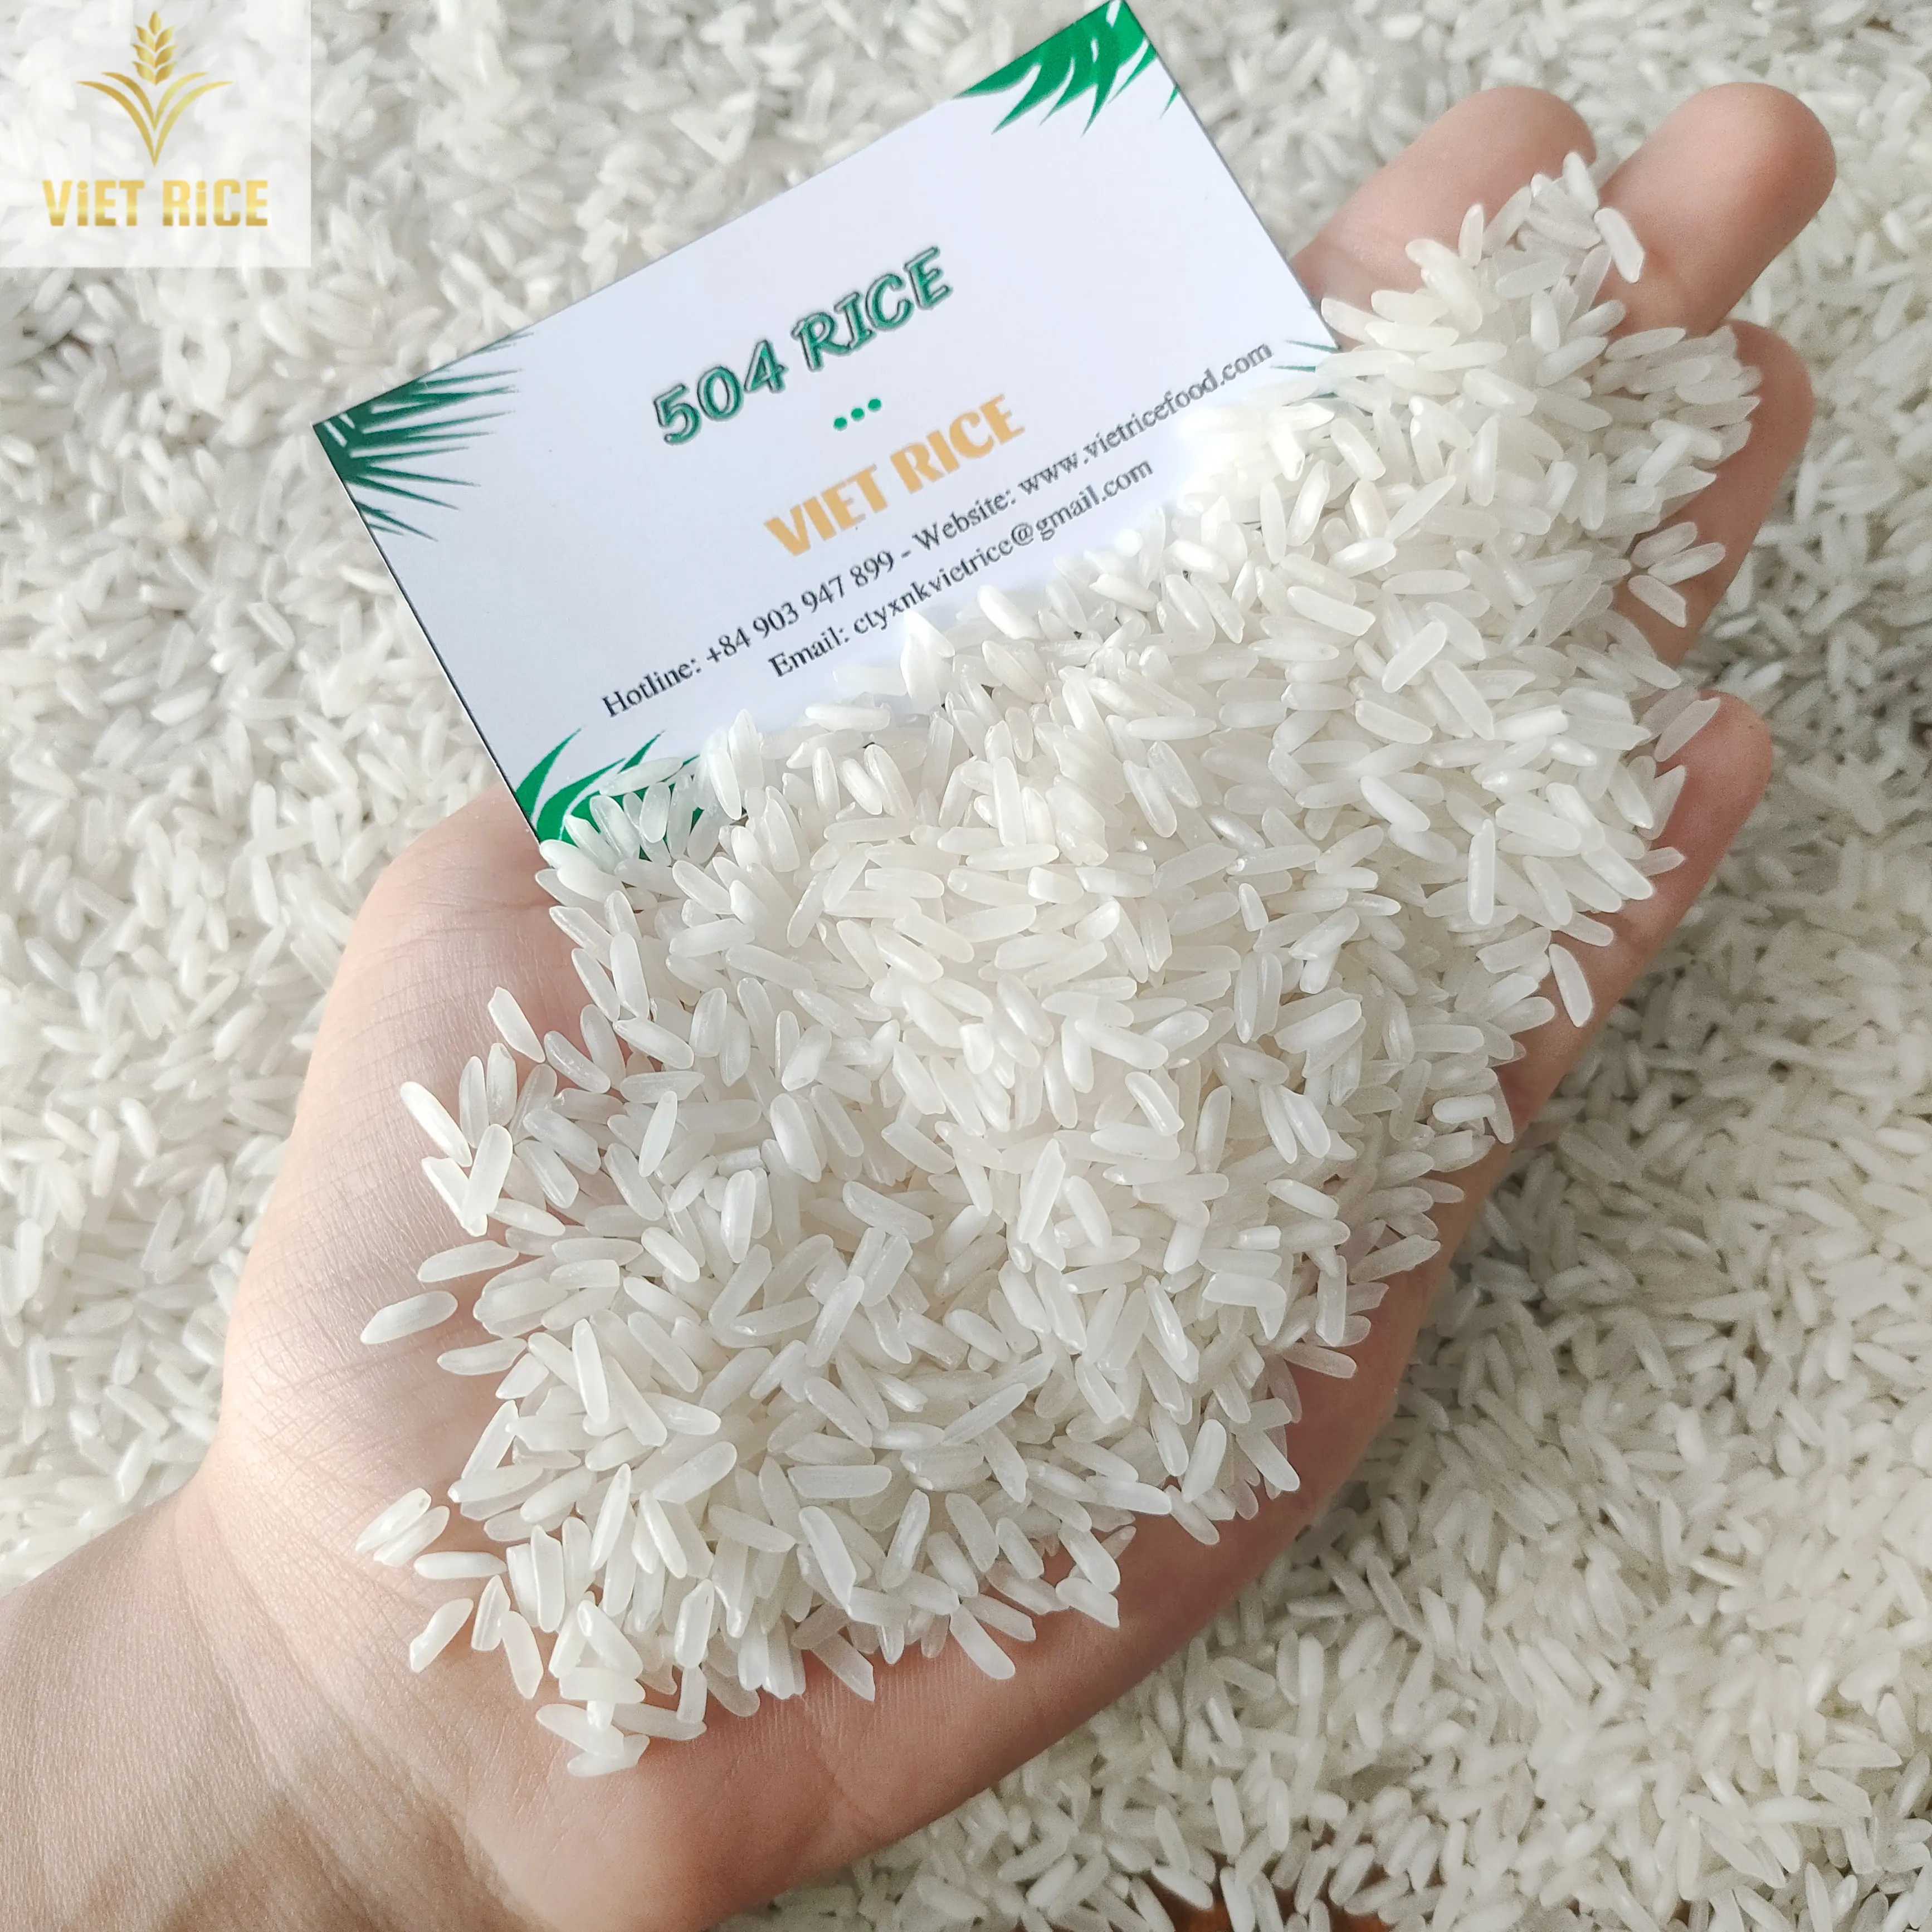 वियतनामी चावल (सर्वश्रेष्ठ आपूर्तिकर्ता, 504 चावल) बेहतर गुणवत्ता और मात्रा के सफेद चावल को घरेलू और अंतरराष्ट्रीय स्तर पर बेचा जाता है